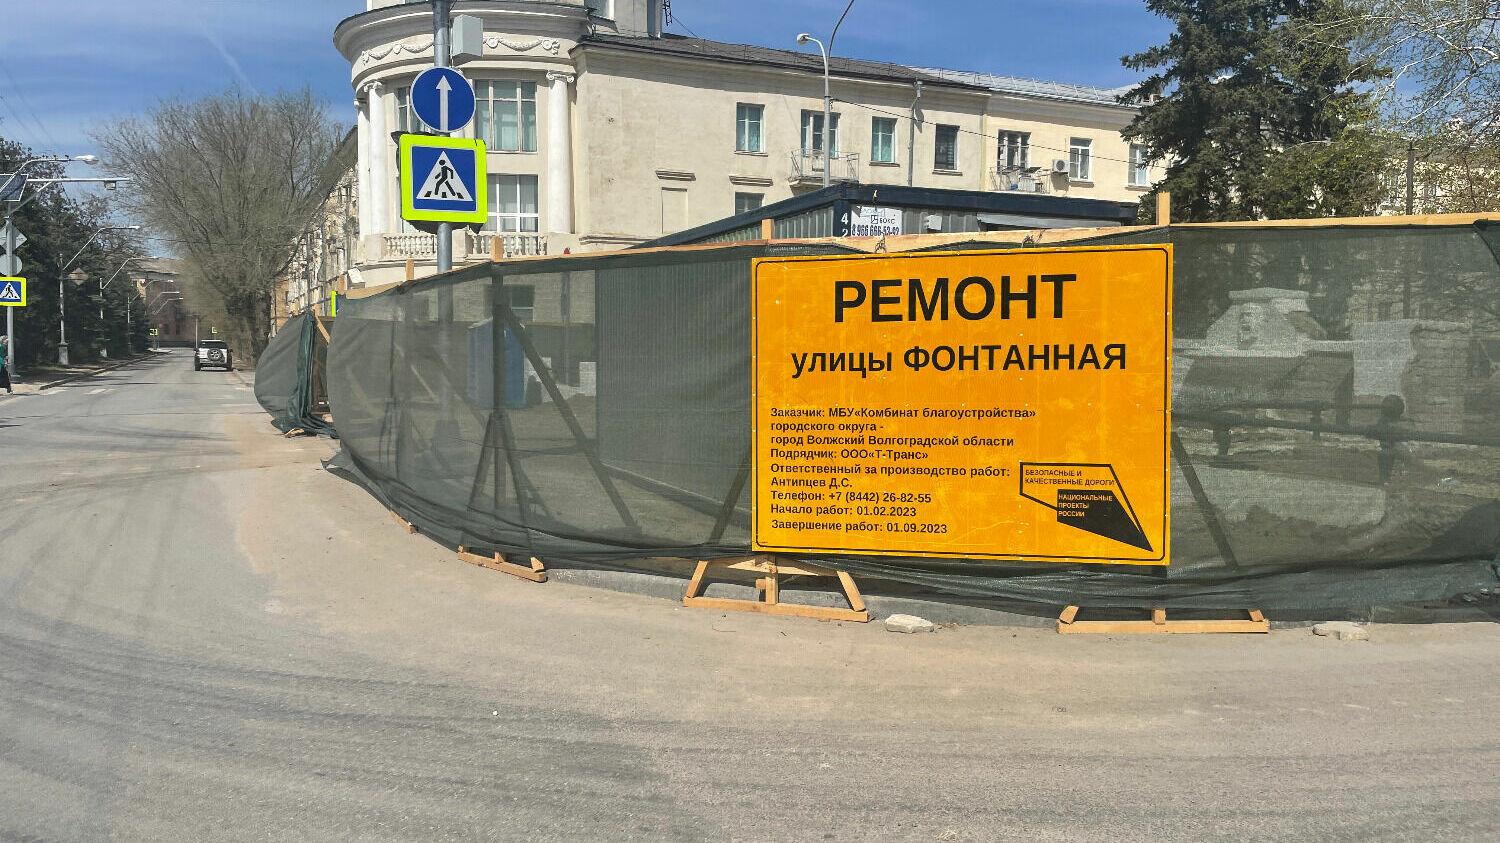 Улица Фонтанная в городе Волжском всостоянии ремонта.